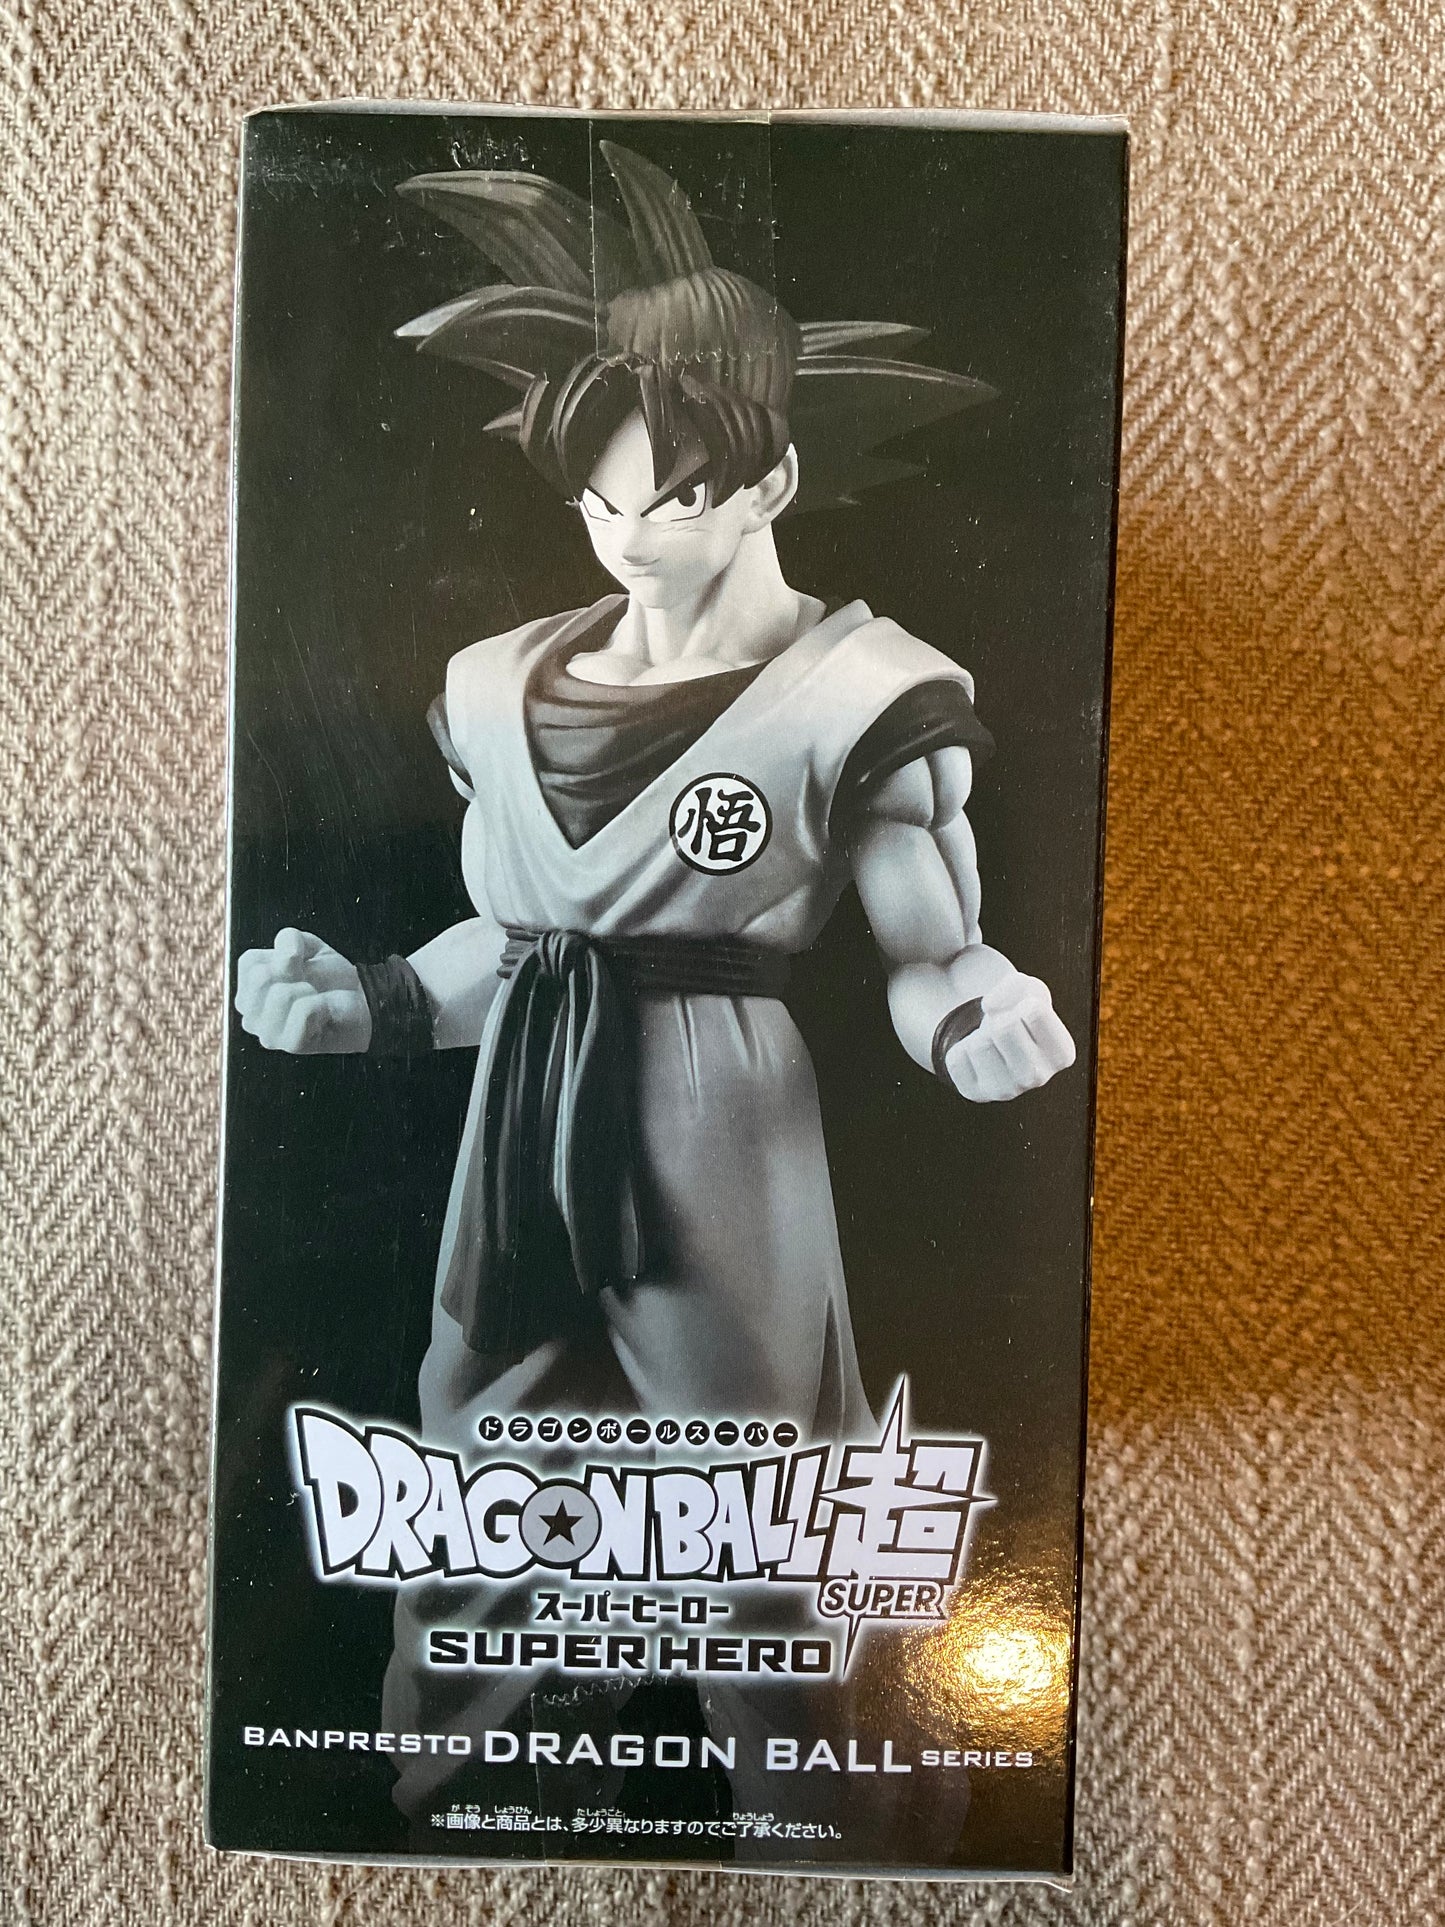 Bandai Namco - super hero DXF, Goku banpresto dragon ball figure